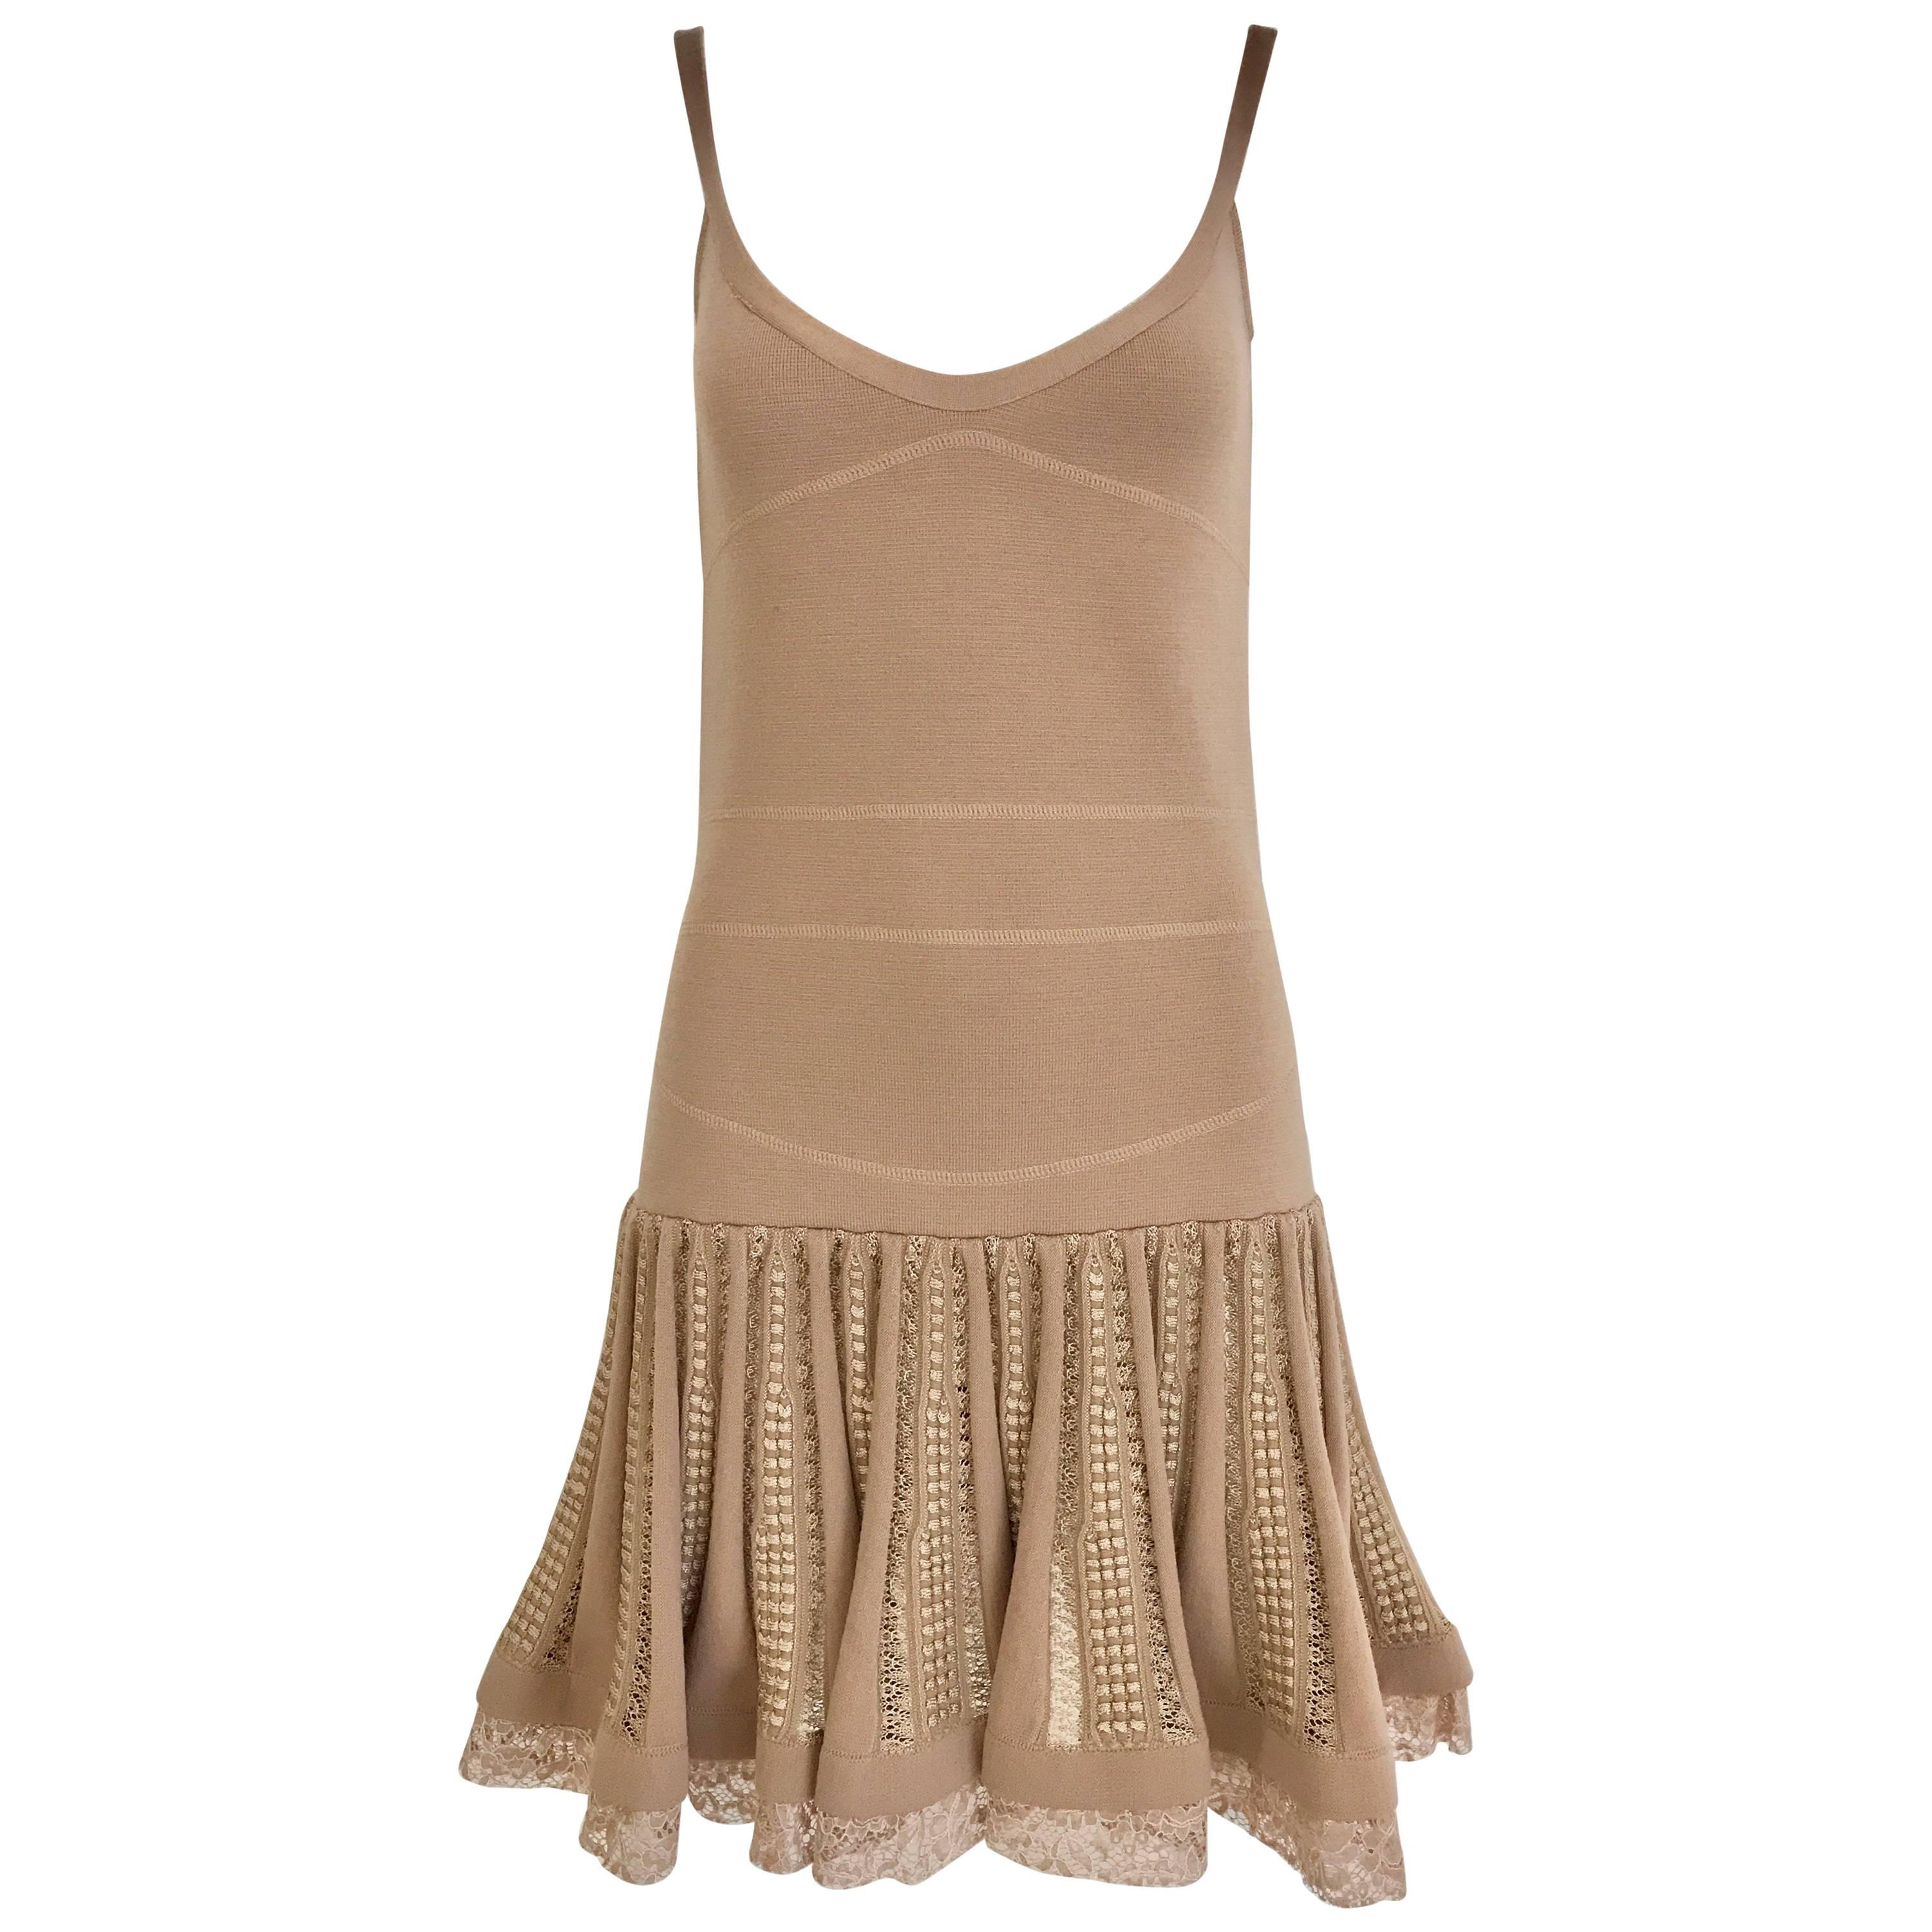 No.21 Alessandro Dell'Acqua Light Mauve Pink Knit Spaghetti Strap Summer Dress For Sale